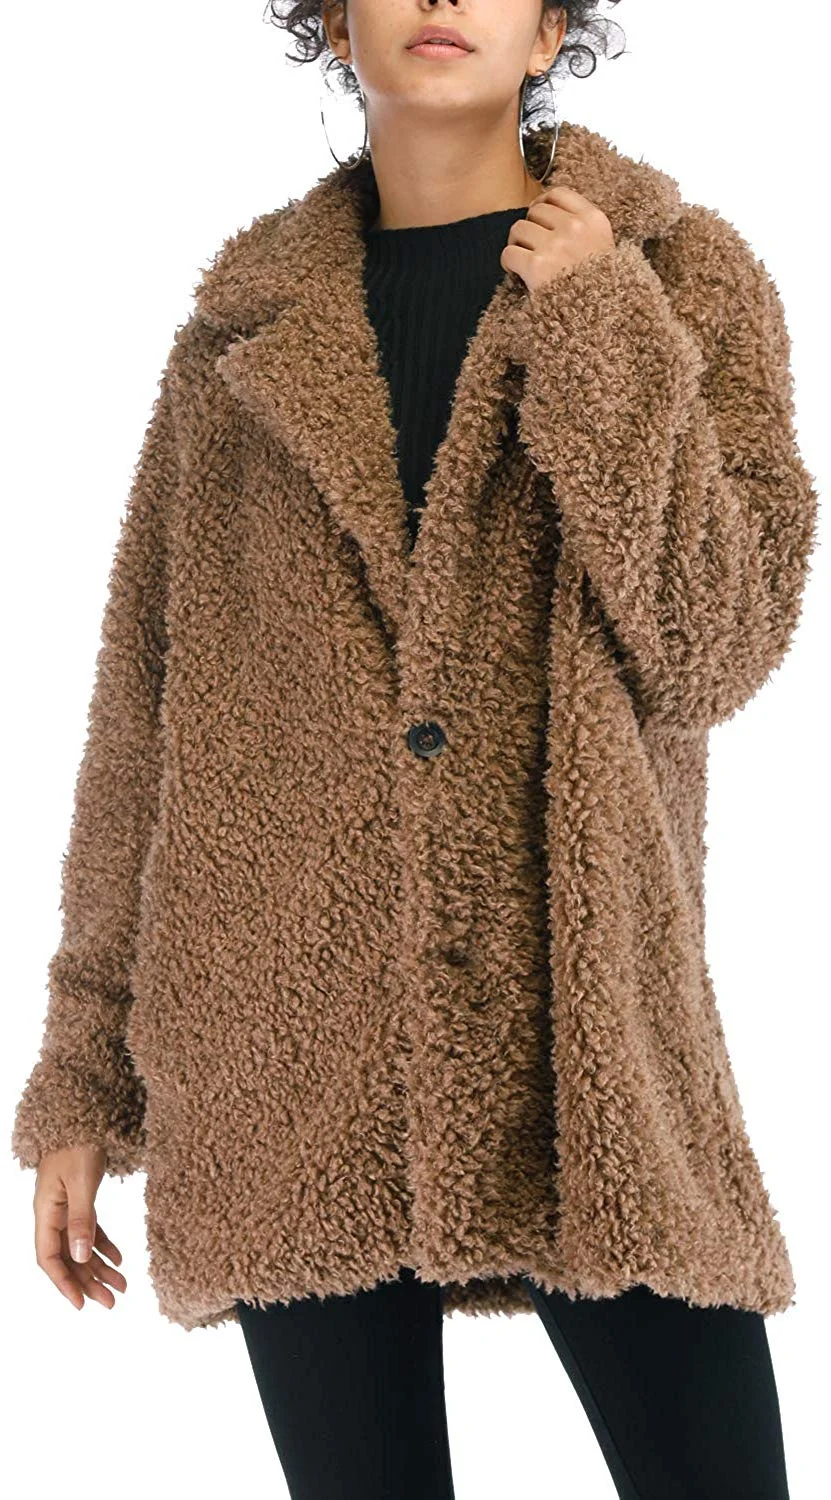 Women's Warm Artificial Soft Wool Lapel Coat Jacket Winter Faux Fur Rolls Wool Parka Outerwear